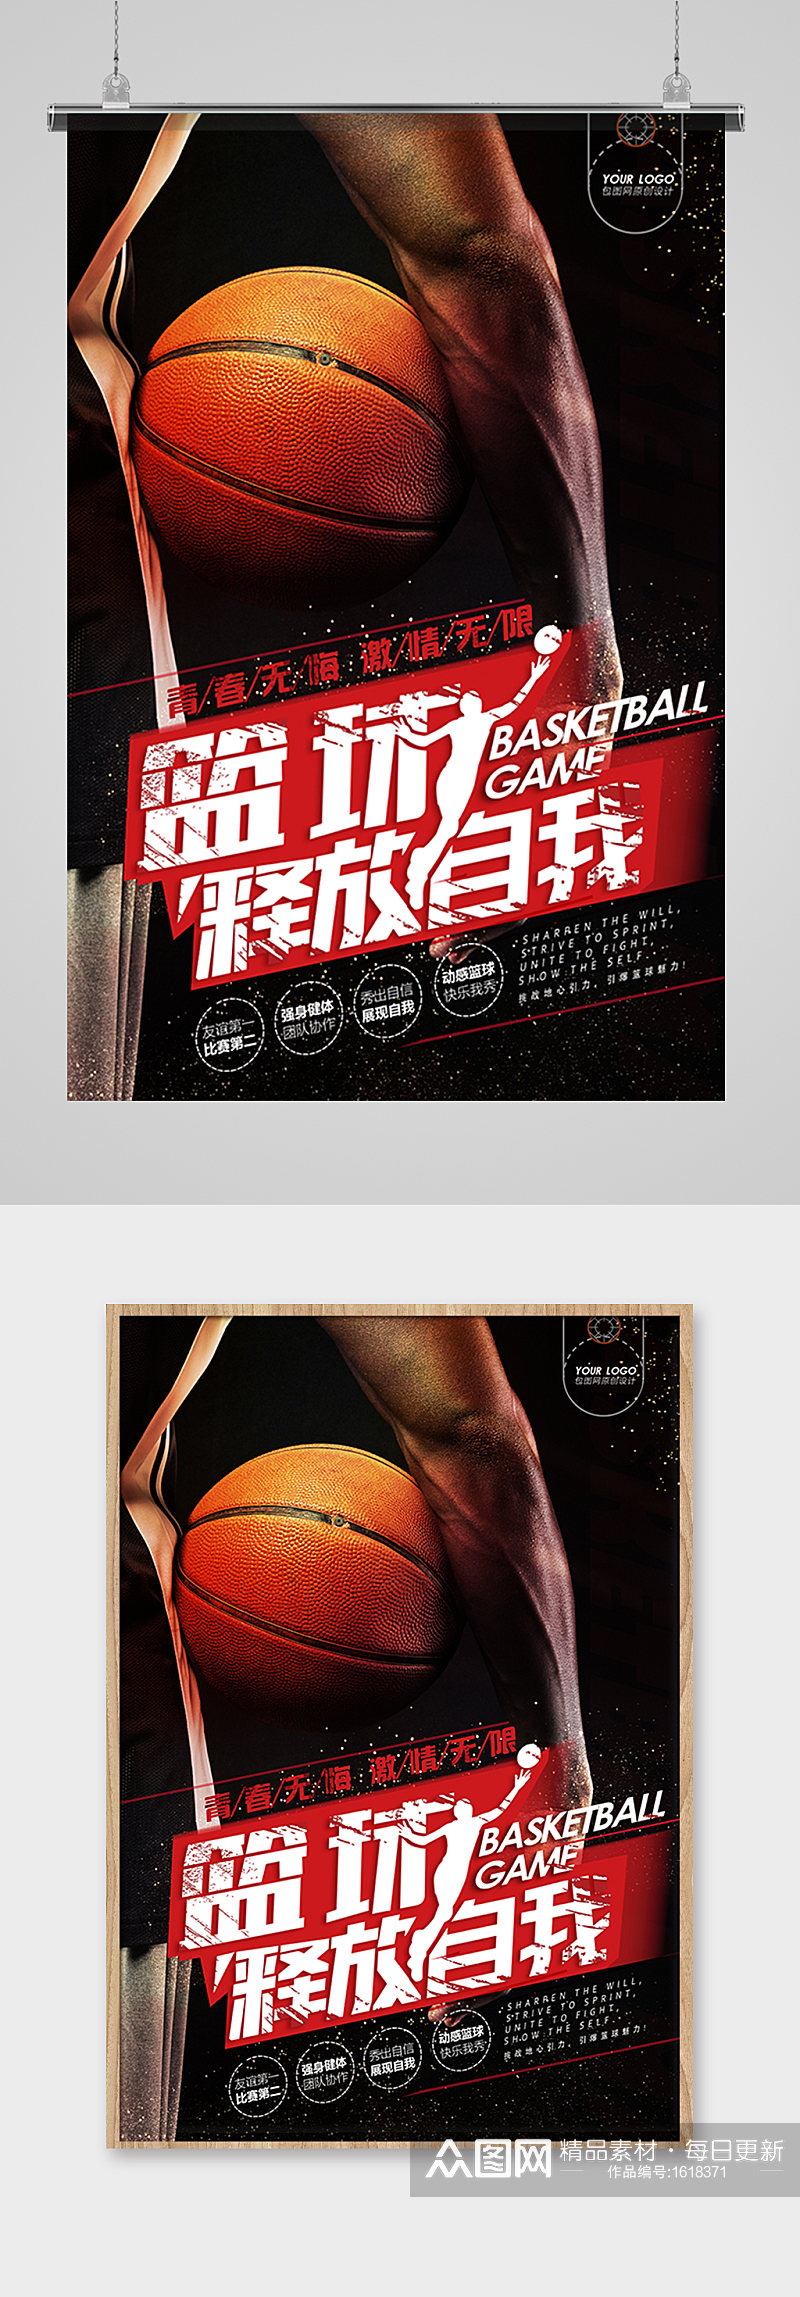 创意大气质感篮球比赛海报素材